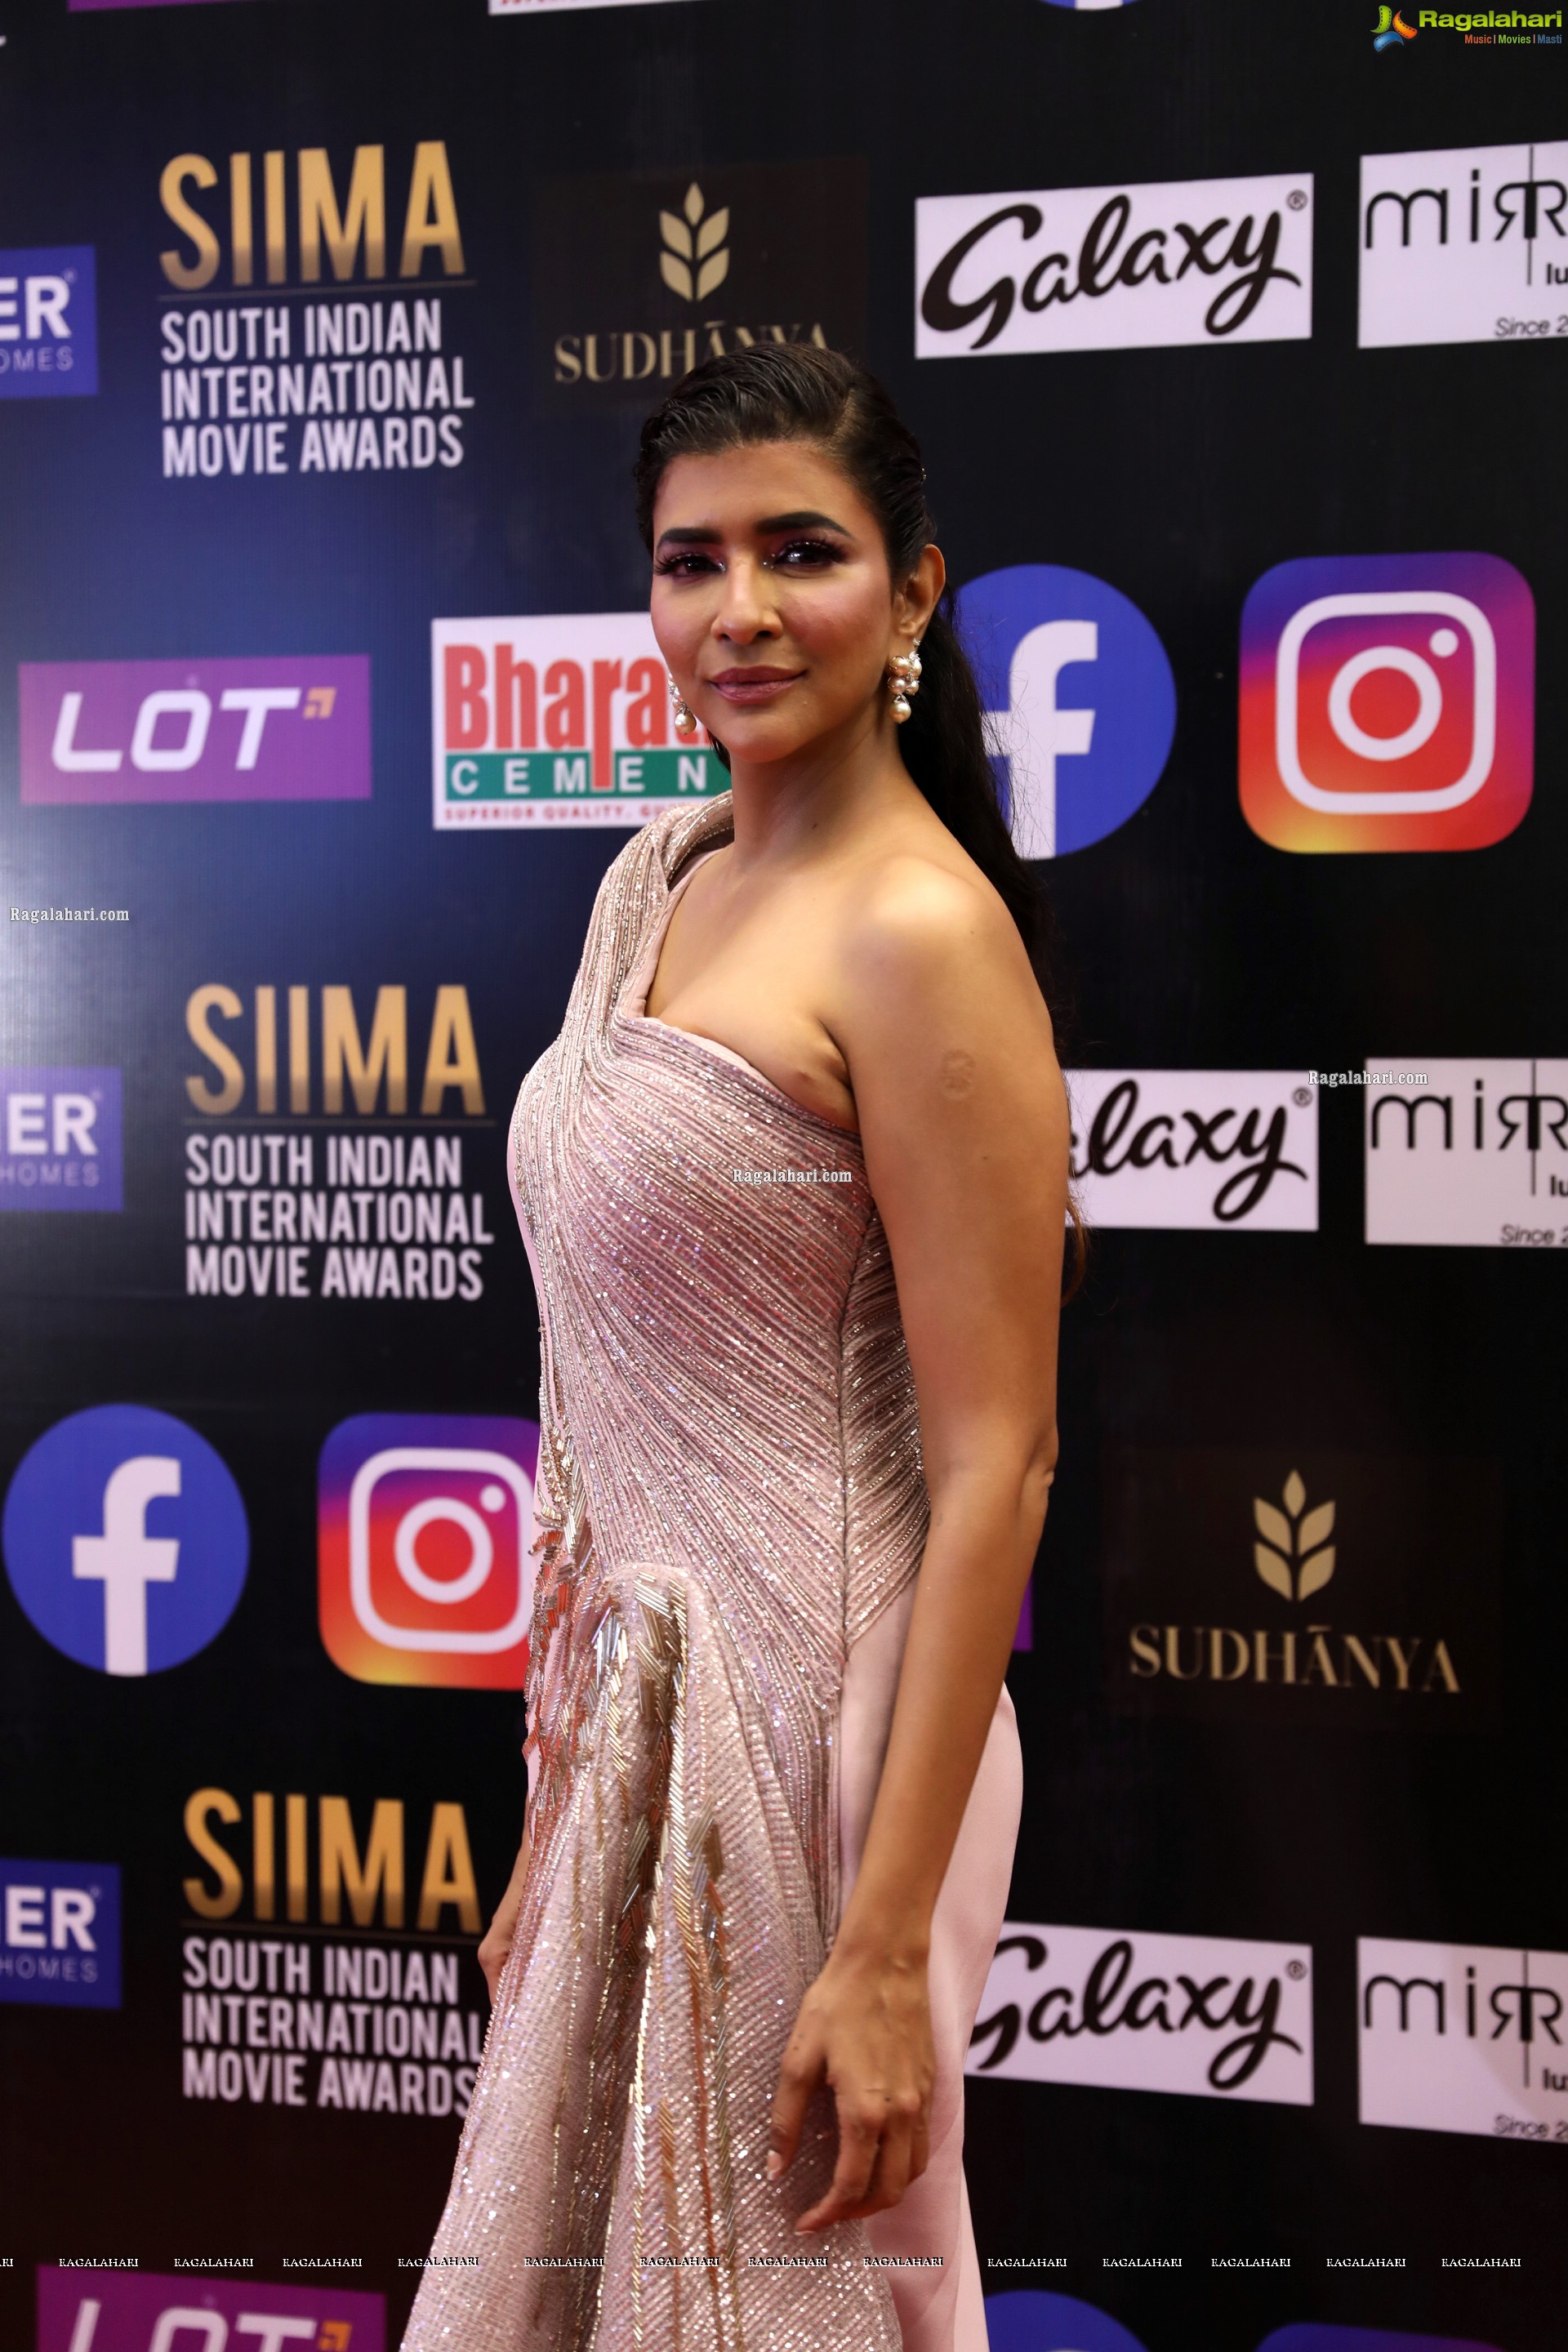 Lakshmi Manchu at SIIMA Awards 2021, HD Photo Gallery